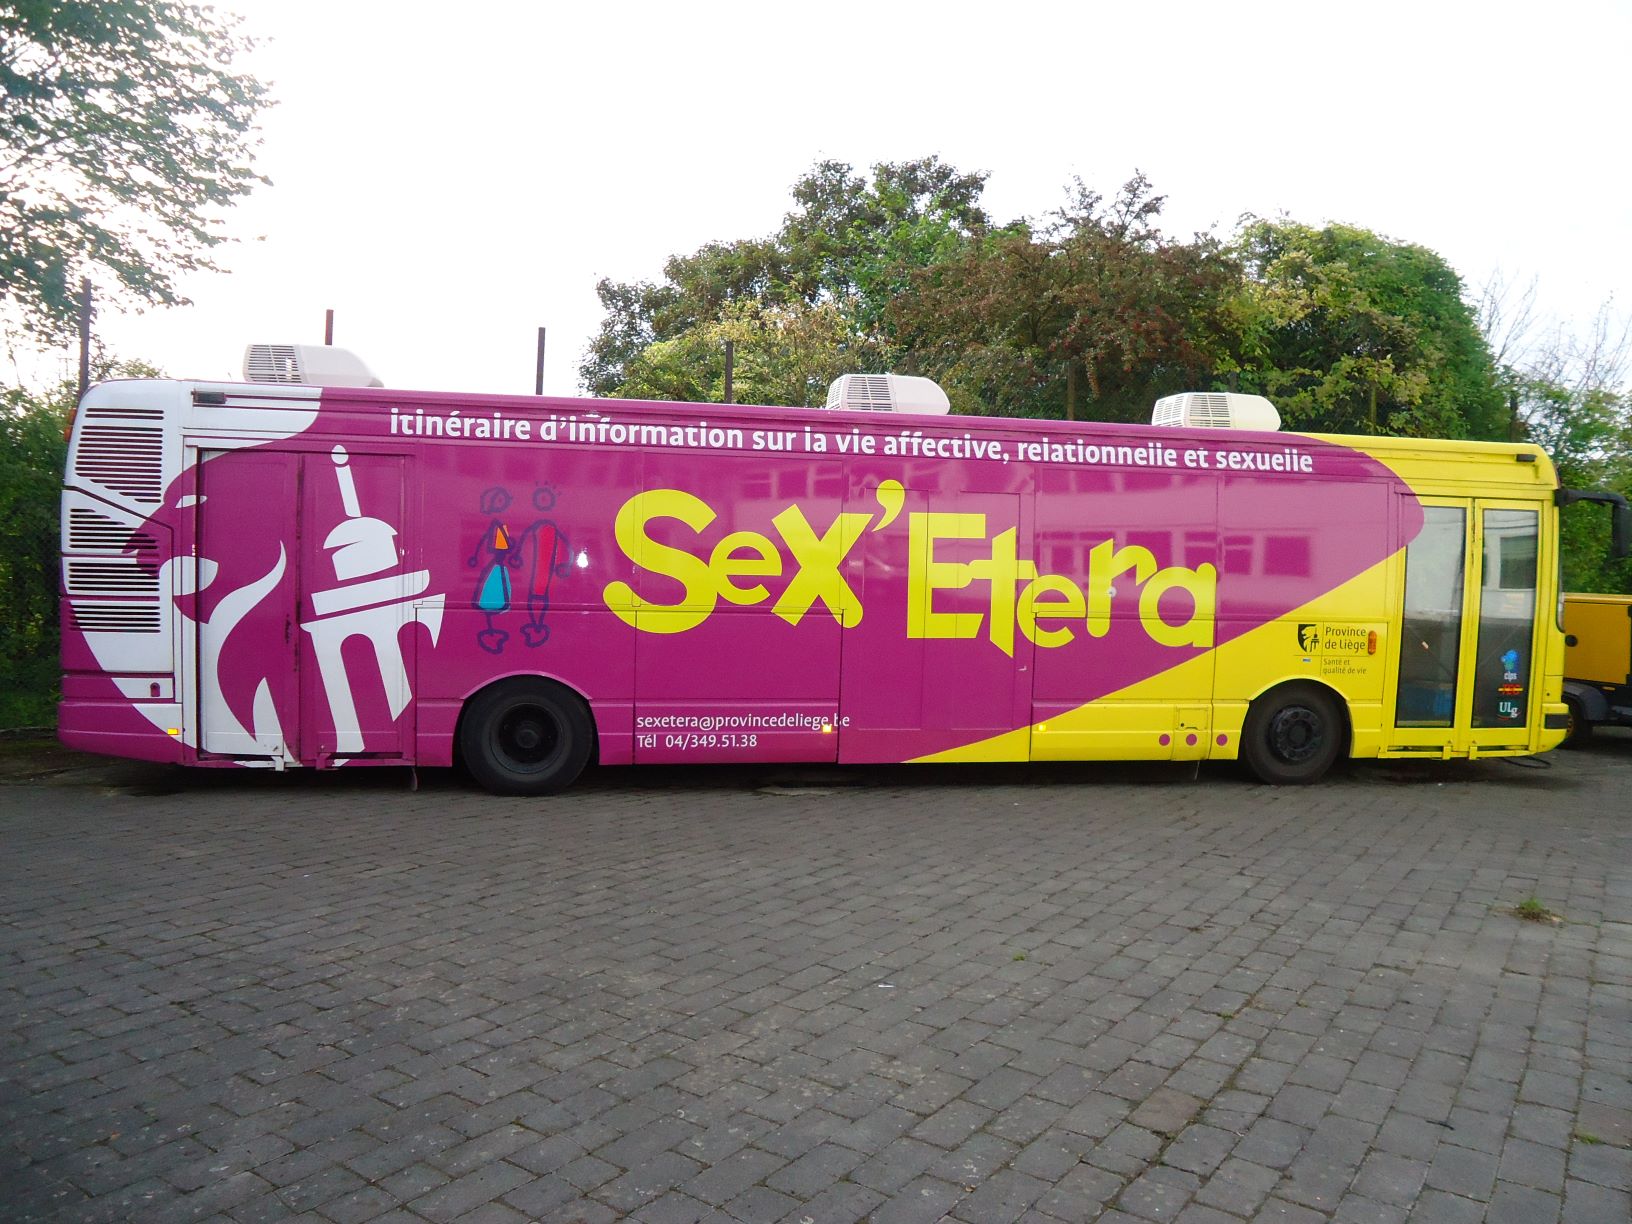 Le bus Sex'Etera sera présent à l'école les 1,2 et 3 avril 2019